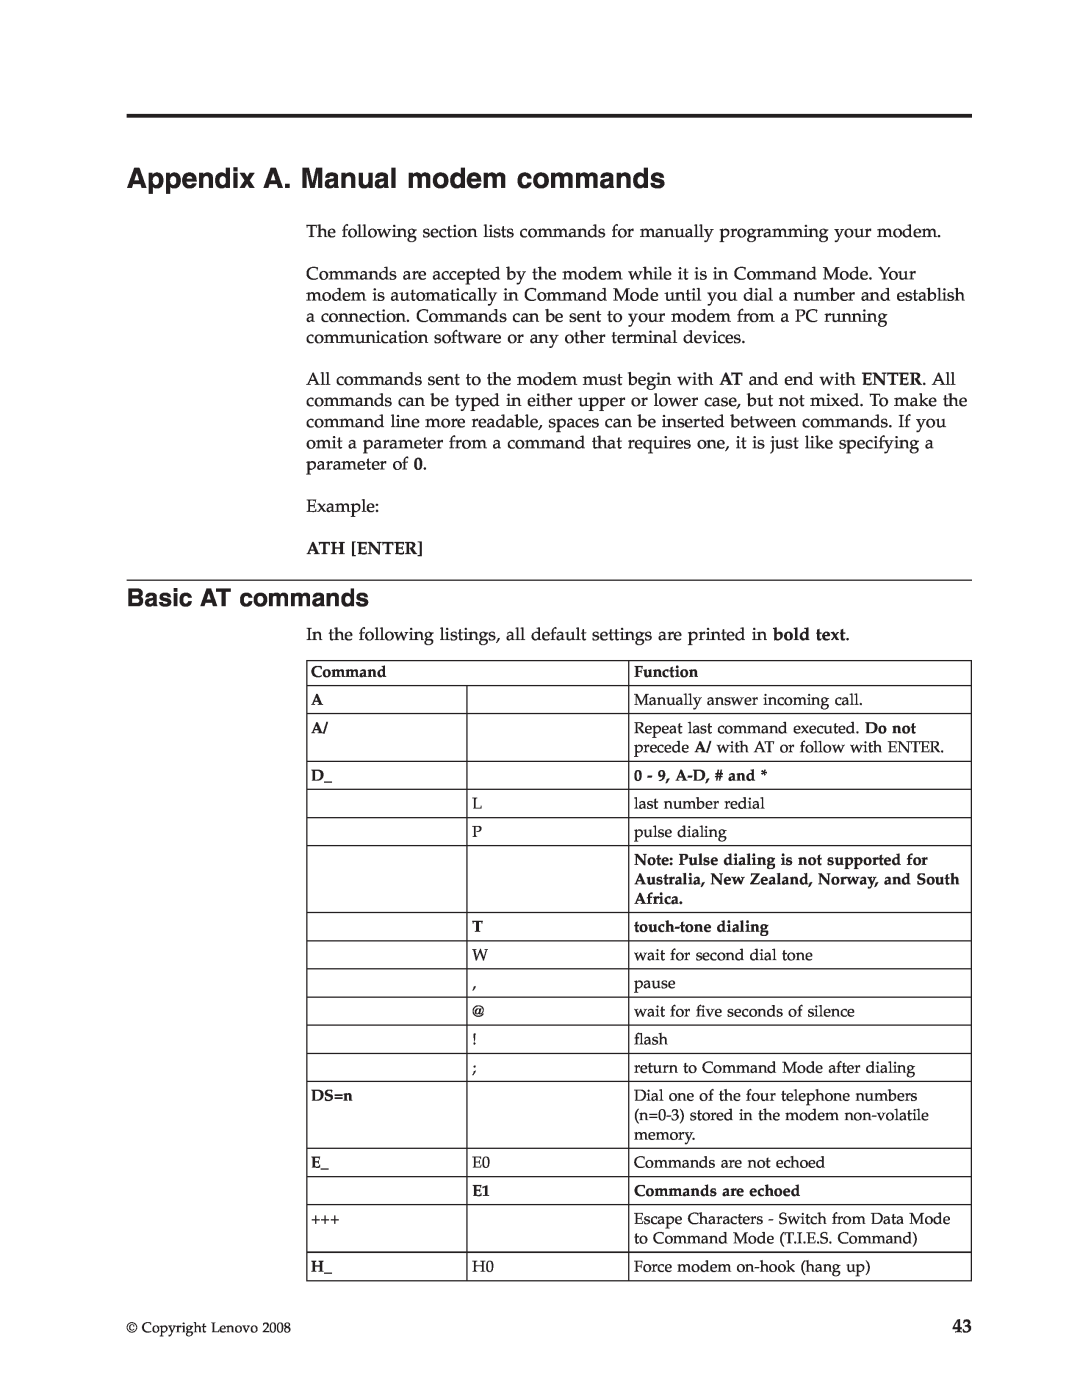 Lenovo 6306 manual Appendix A. Manual modem commands, Basic AT commands 